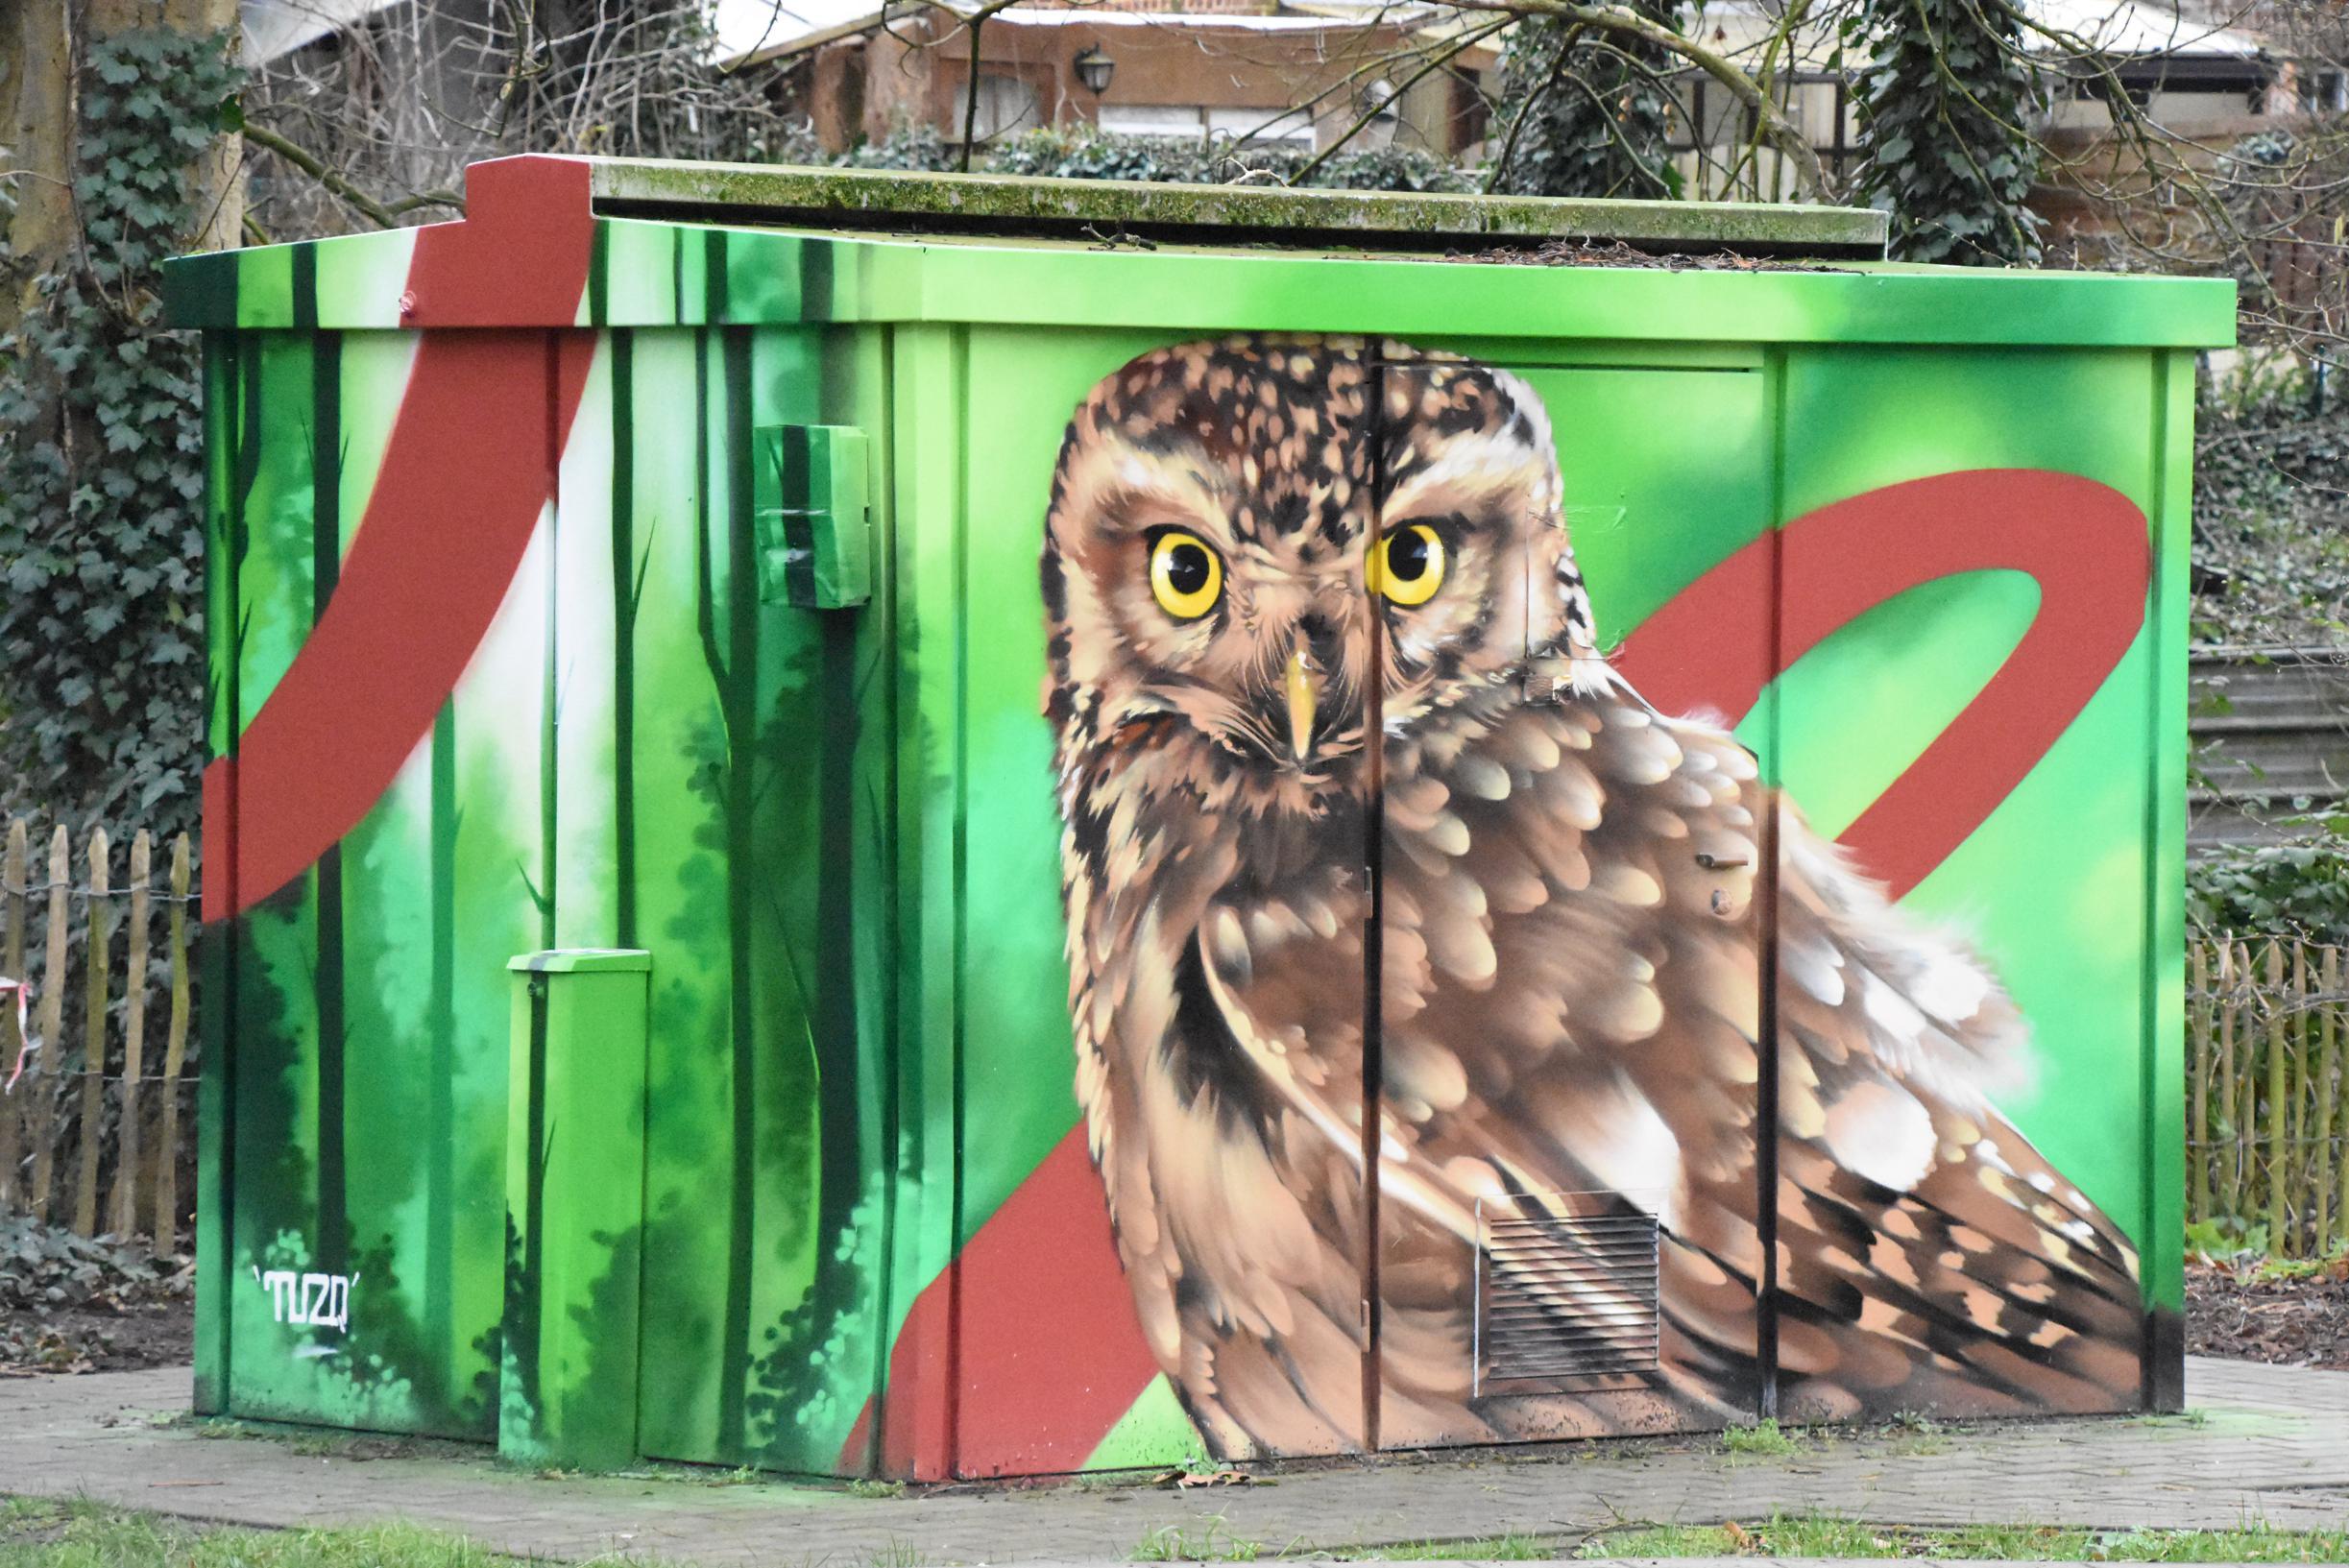 Nieuw kunstproject tovert saaie elektriciteitskasten om tot pareltje van street art